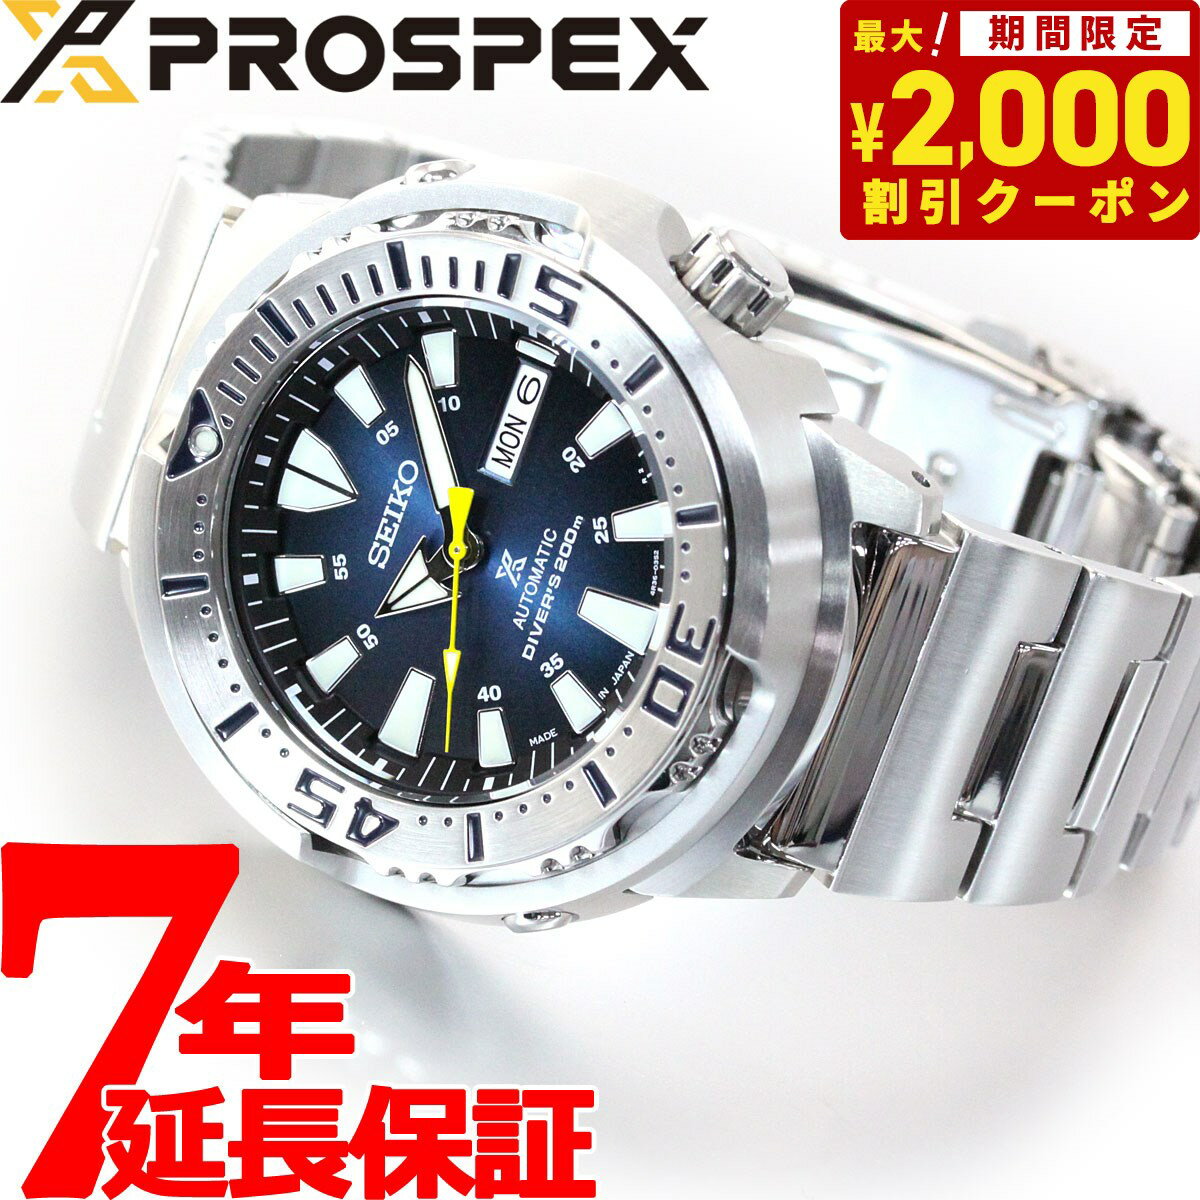 セイコー プロスペックス SEIKO PROSPEX ダイバースキューバ メカニカル 自動巻き ネット流通限定モデル 腕時計 メンズ ベビーツナ Baby Tuna SBDY055